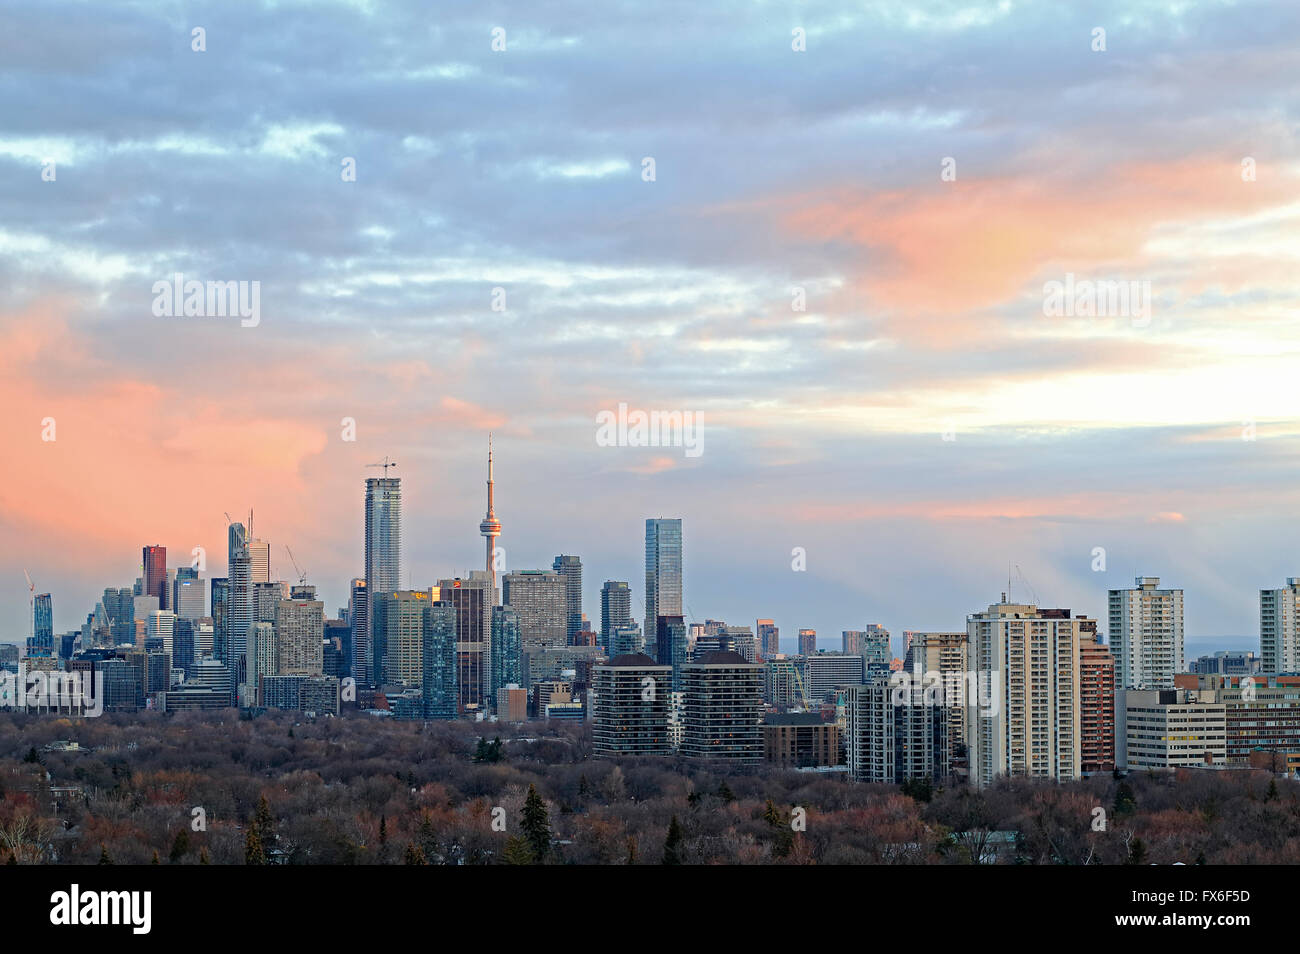 Toronto city skyline avec de grands bâtiments y compris la Tour CN, les bâtiments des entreprises et des banques dans Downtown et Midtown, wit Banque D'Images